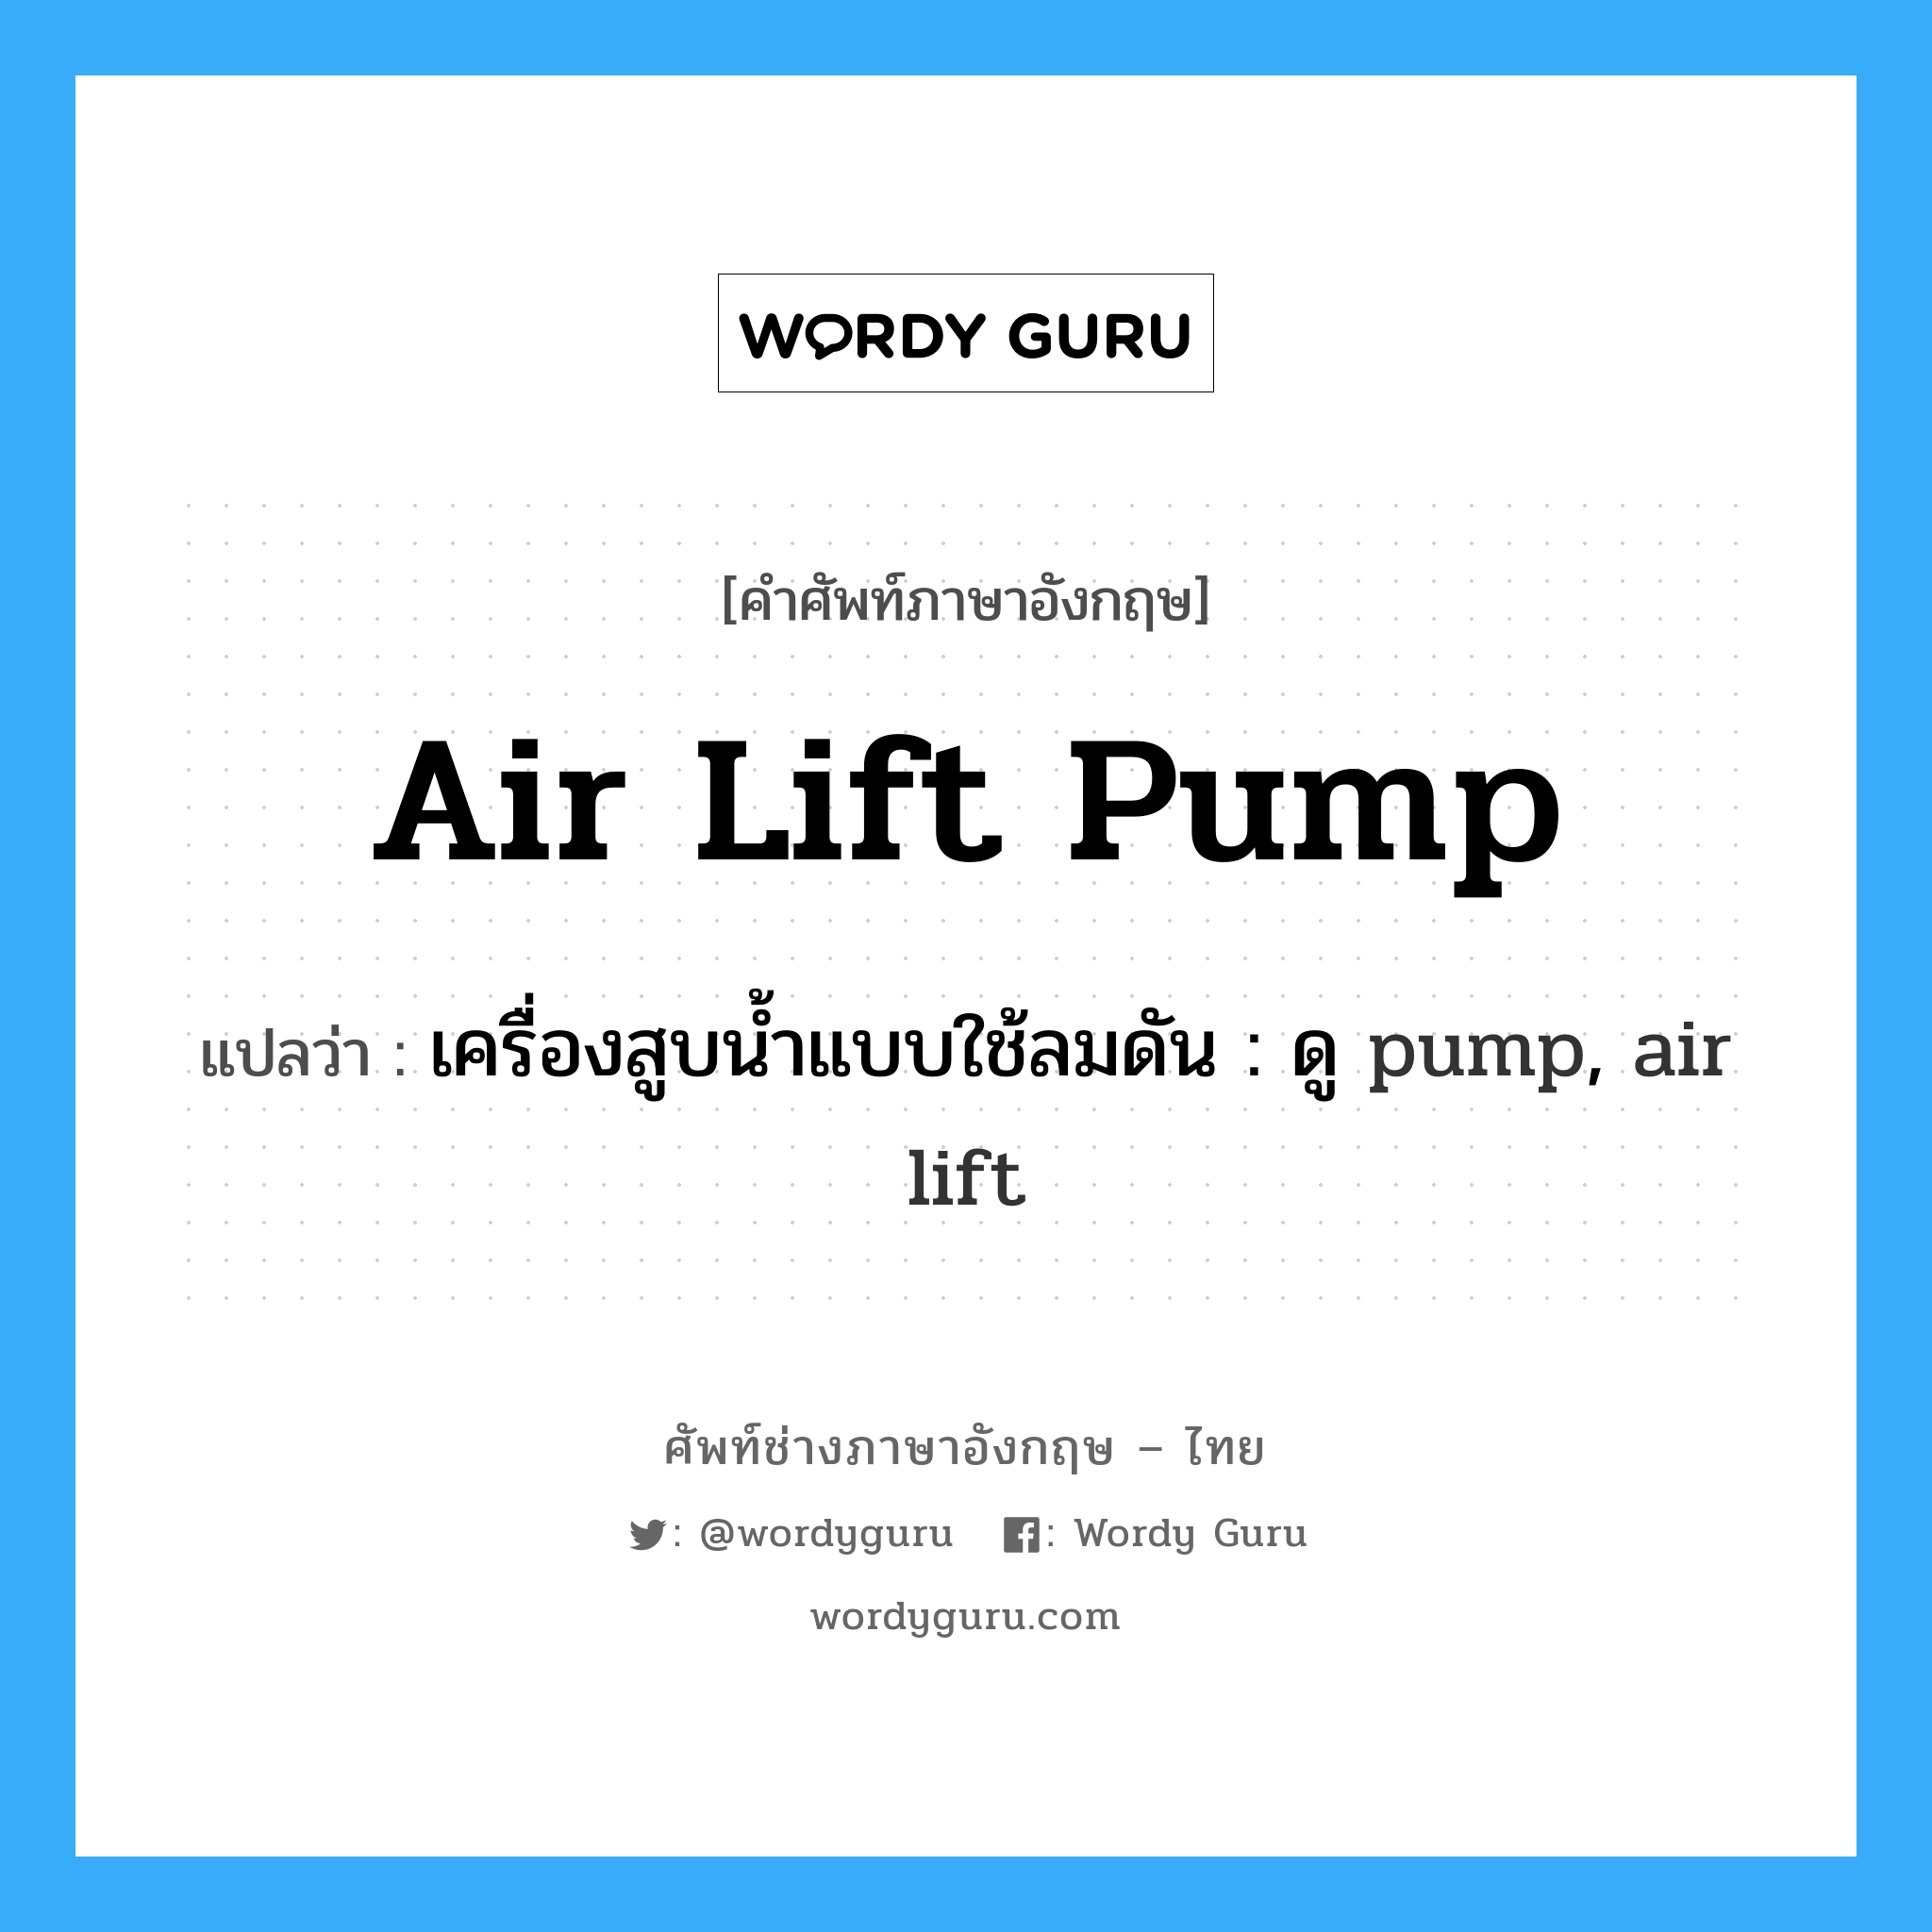 เครื่องสูบน้ำแบบใช้ลมดัน : ดู pump, air lift ภาษาอังกฤษ?, คำศัพท์ช่างภาษาอังกฤษ - ไทย เครื่องสูบน้ำแบบใช้ลมดัน : ดู pump, air lift คำศัพท์ภาษาอังกฤษ เครื่องสูบน้ำแบบใช้ลมดัน : ดู pump, air lift แปลว่า air lift pump